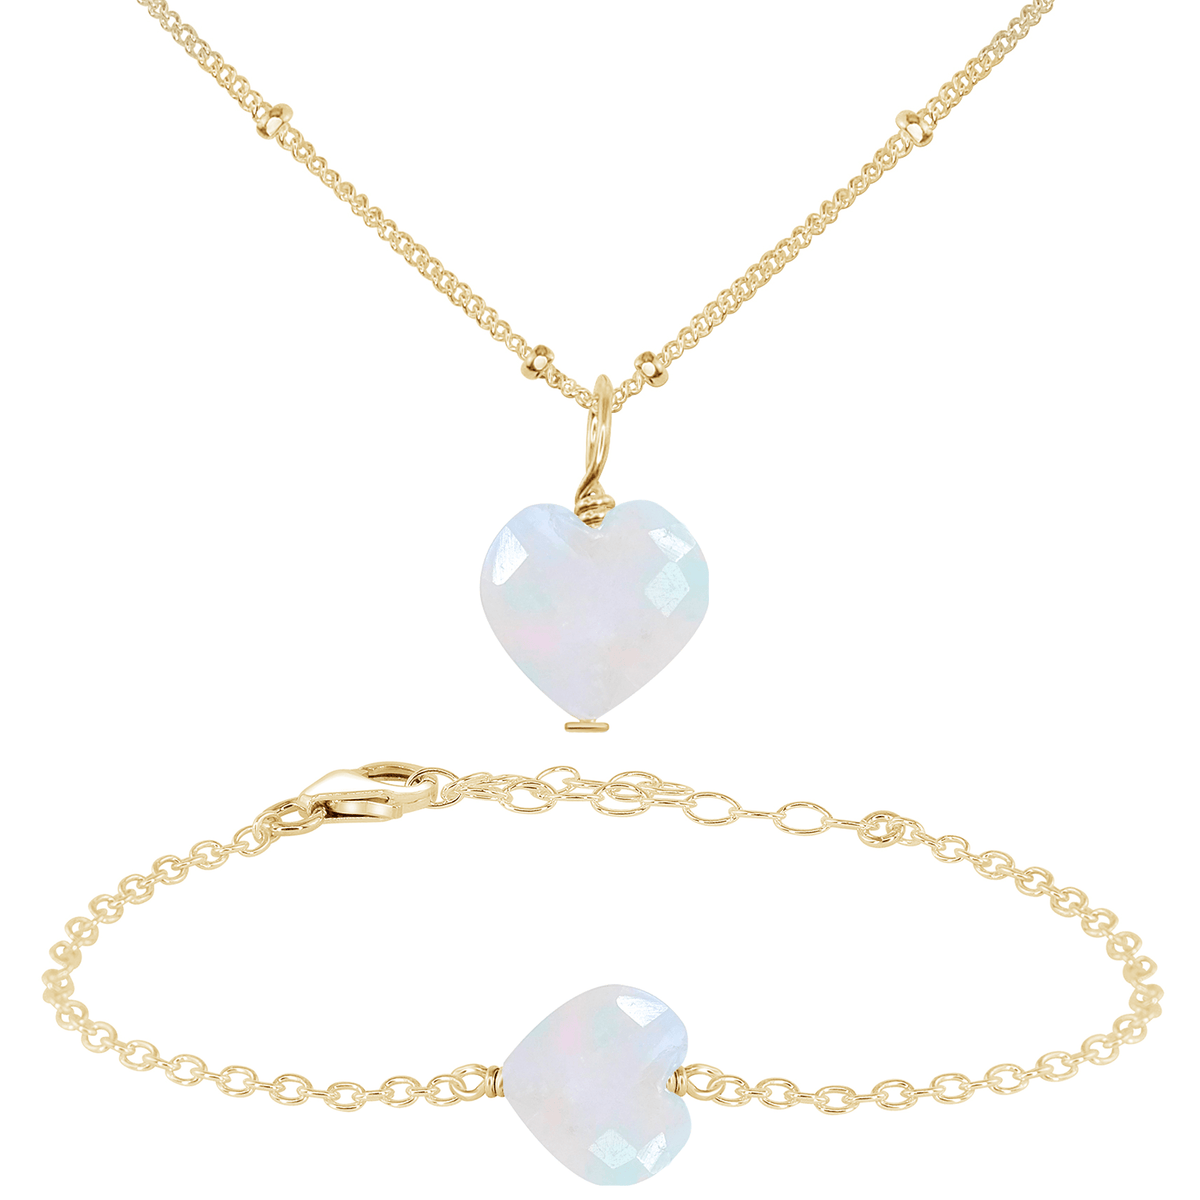 Rainbow Moonstone Crystal Heart Jewellery Set - Rainbow Moonstone Crystal Heart Jewellery Set - 14k Gold Fill / Satellite / Necklace & Bracelet - Luna Tide Handmade Crystal Jewellery